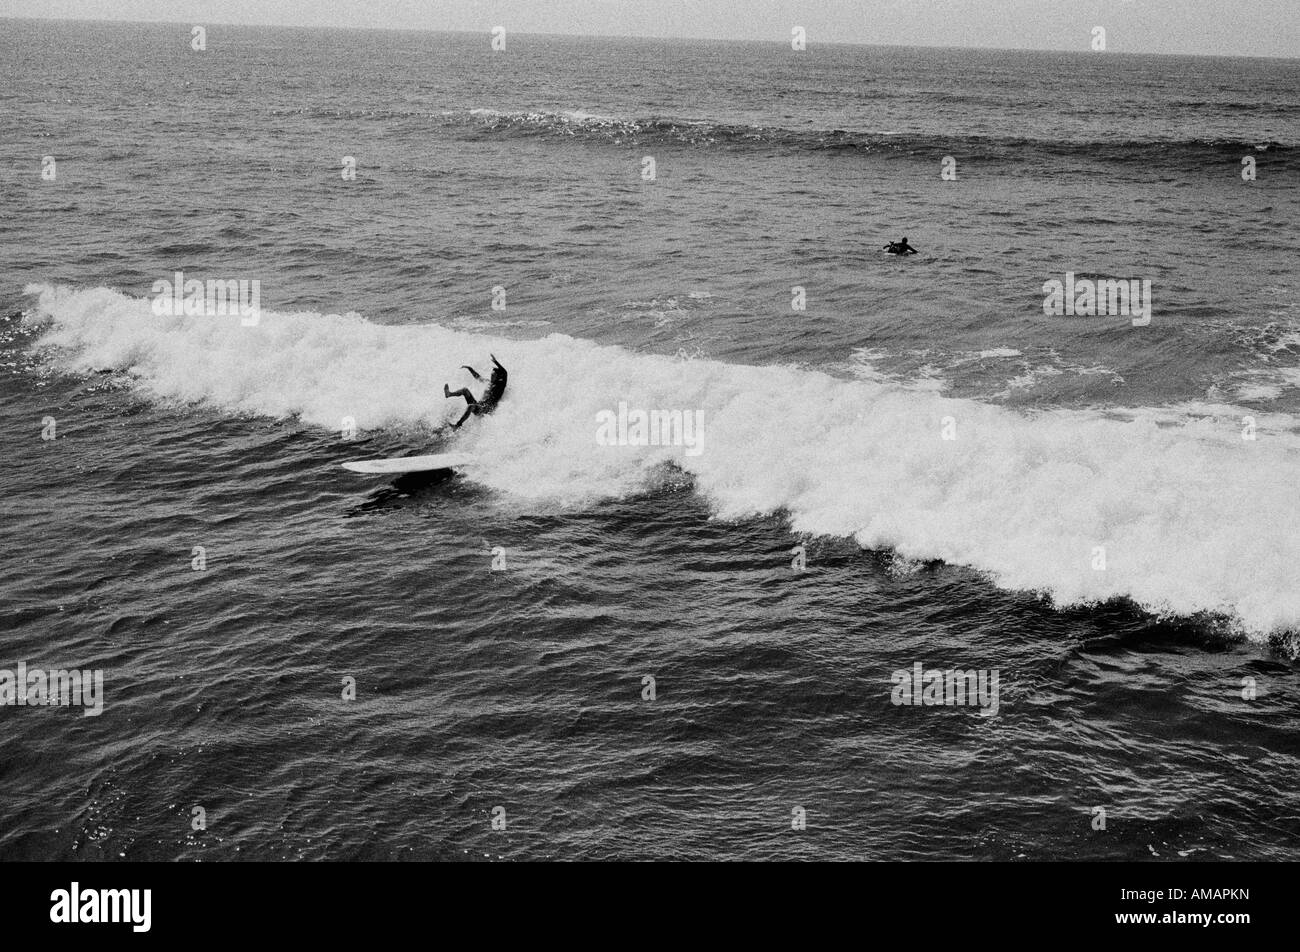 Ein Surfer fallen von einem Surfbrett im Meer Stockfoto